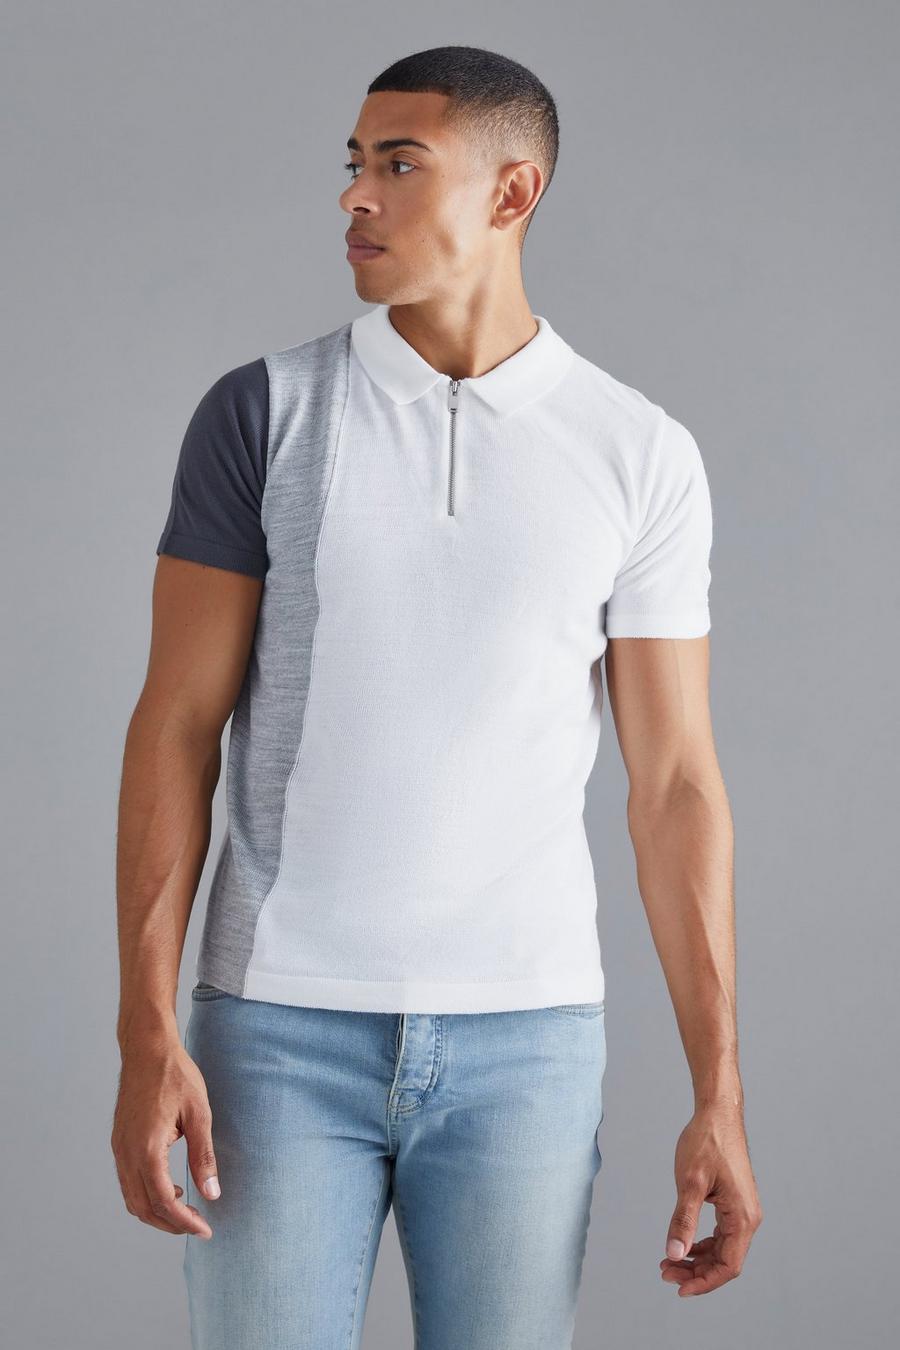 Kurzärmliges Colorblock Strick-Poloshirt mit halbem Reißverschluss, Grey grau